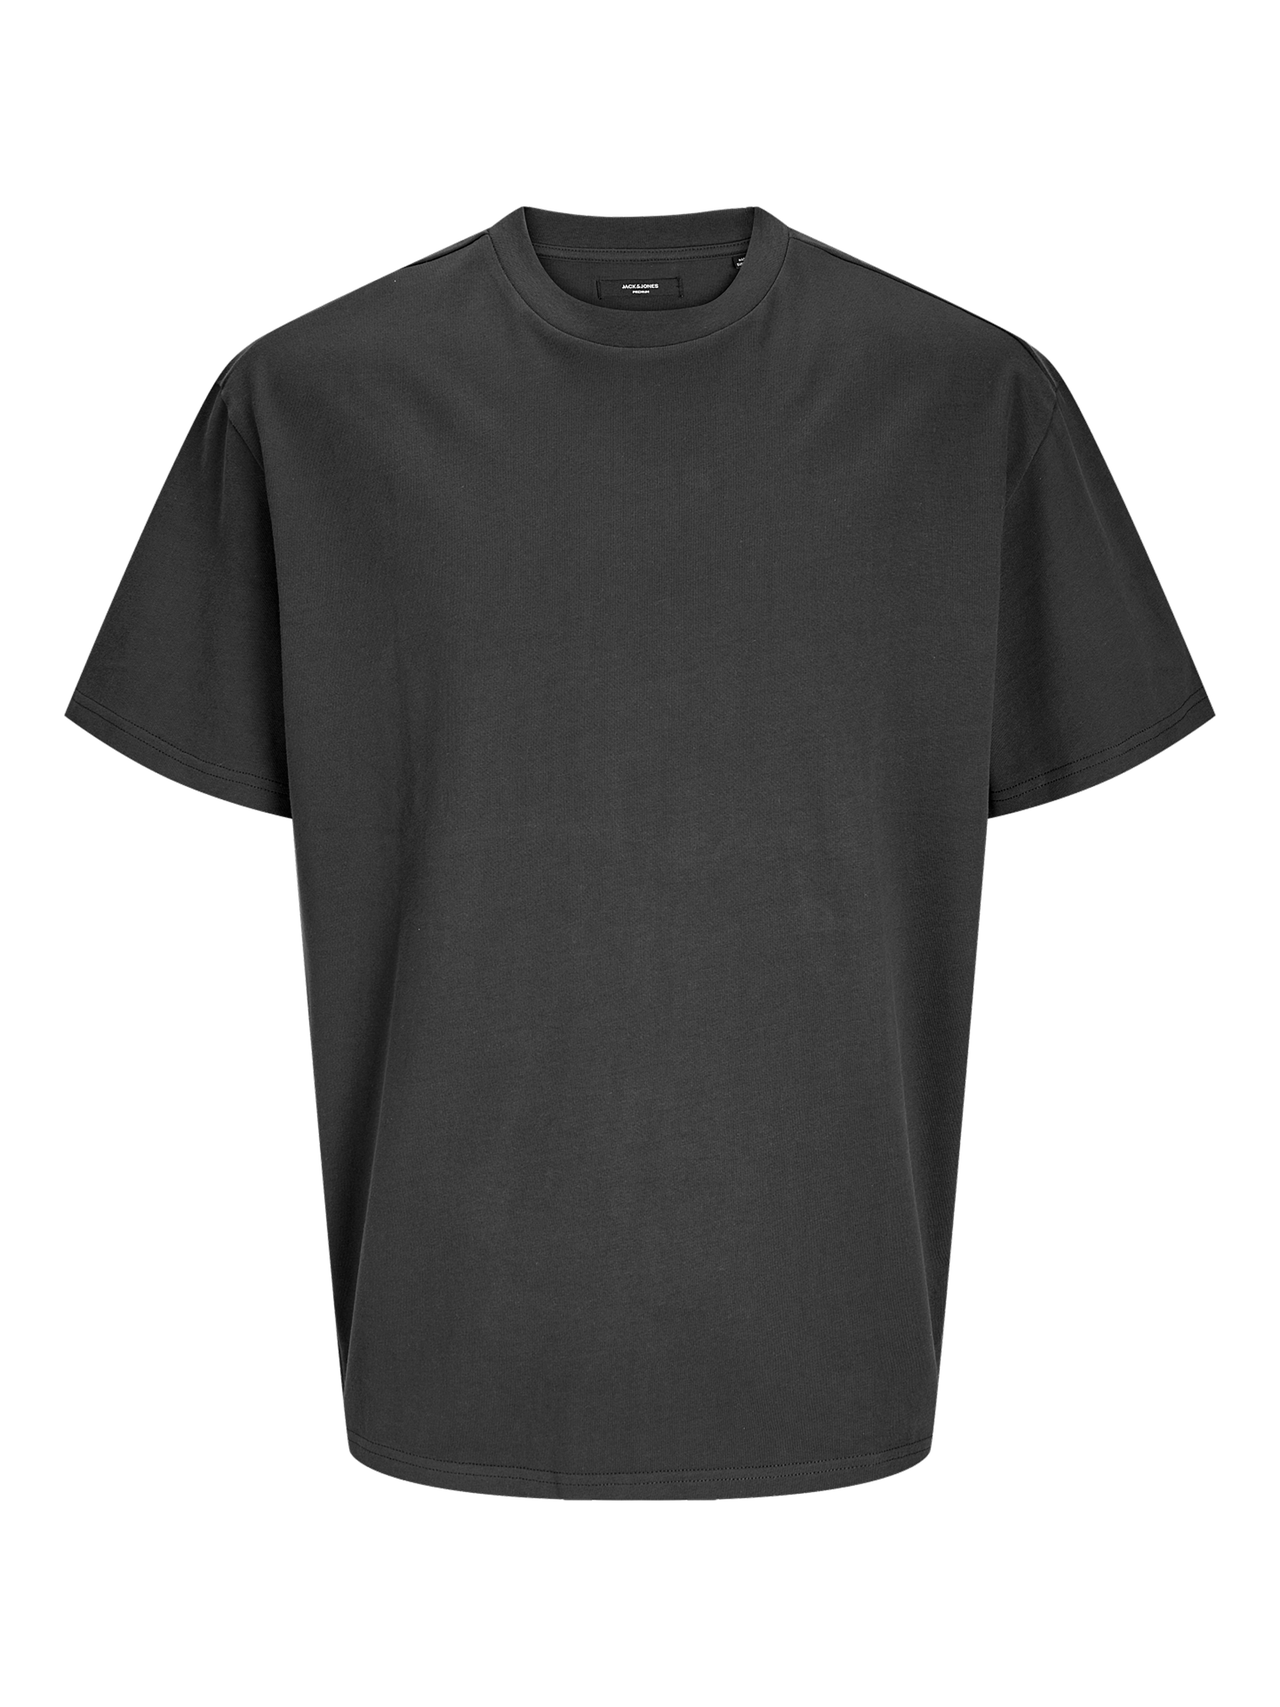 Jack & Jones Plain Crew neck T-shirt -Asphalt - 12255176